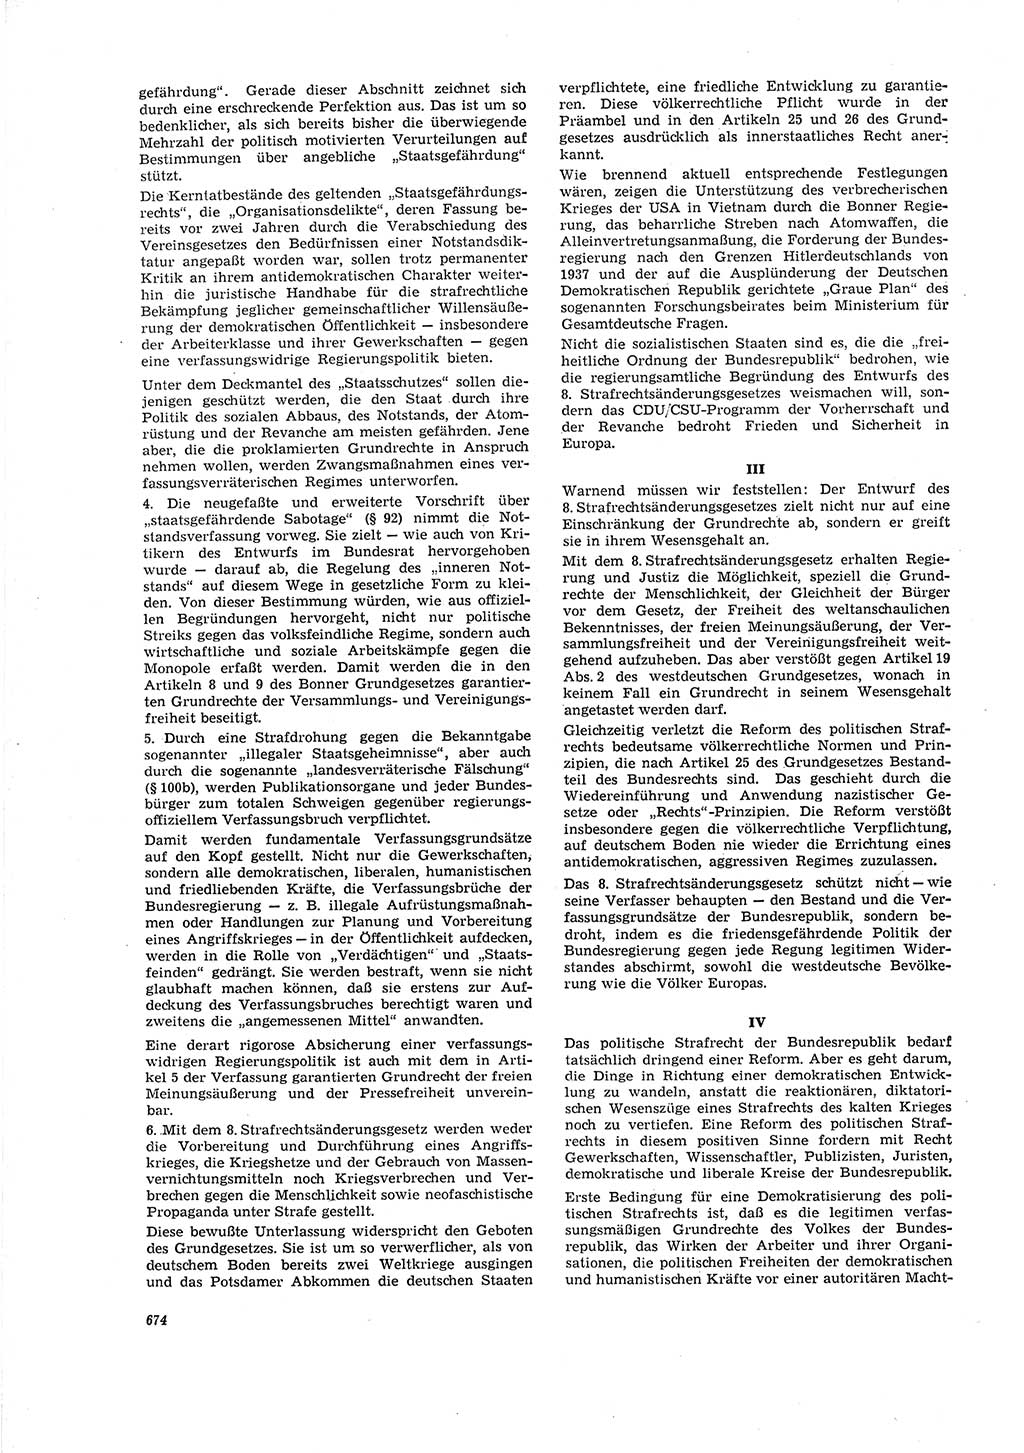 Neue Justiz (NJ), Zeitschrift für Recht und Rechtswissenschaft [Deutsche Demokratische Republik (DDR)], 20. Jahrgang 1966, Seite 674 (NJ DDR 1966, S. 674)